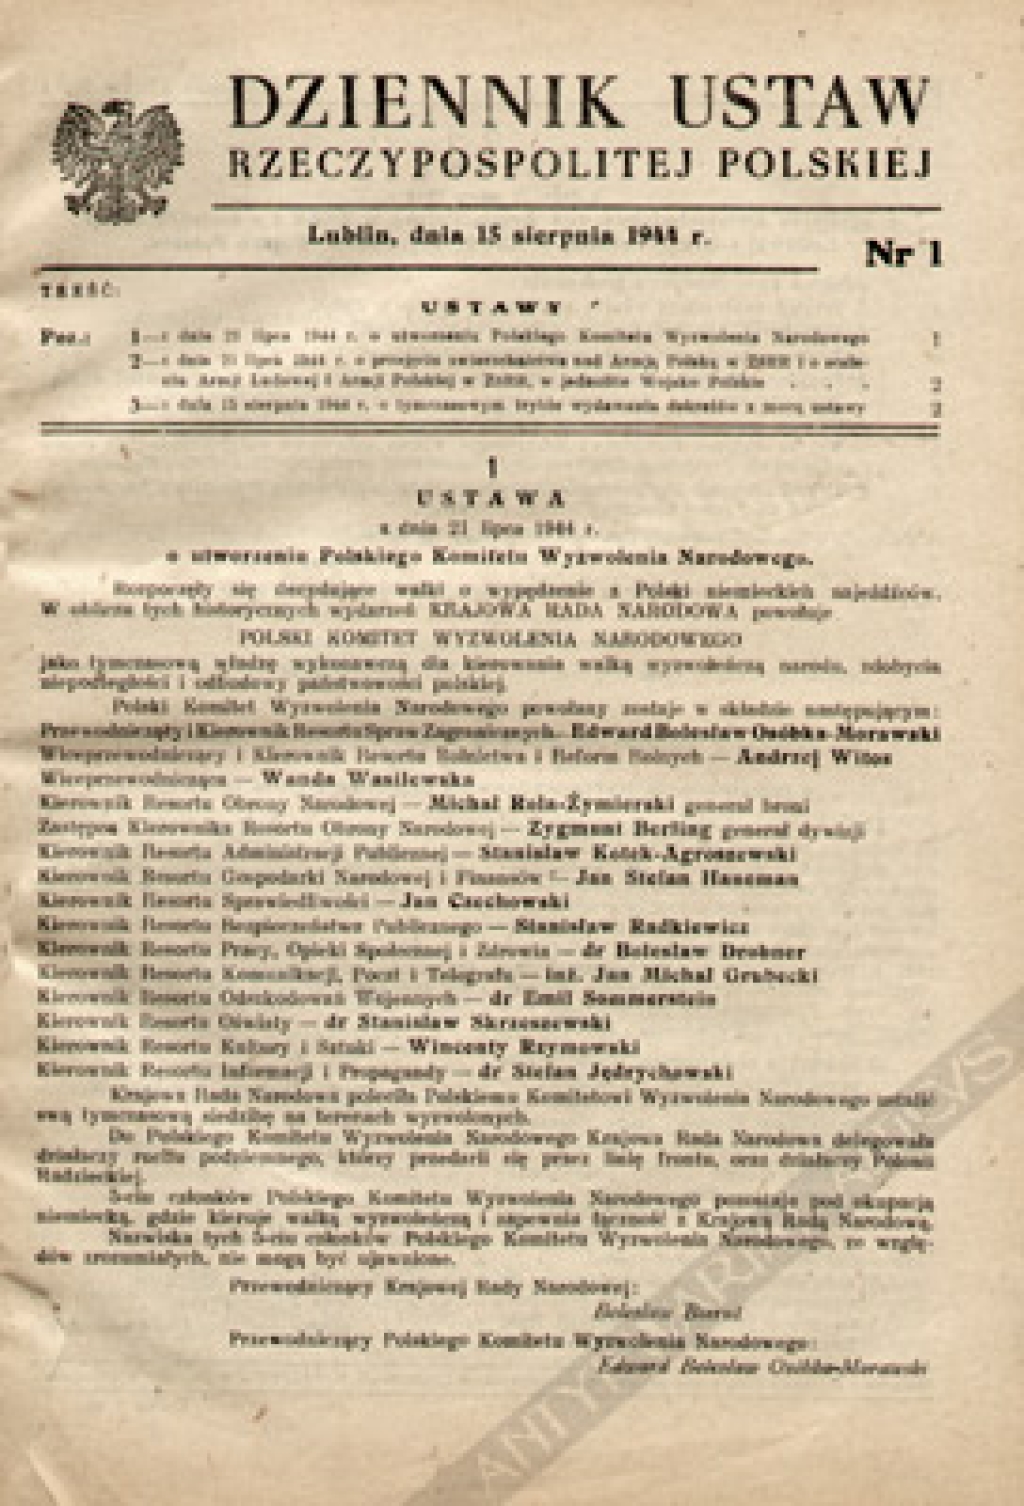 Dziennik ustaw Rzeczypospolitej Polskiej. Rok 1944, nr 1-19